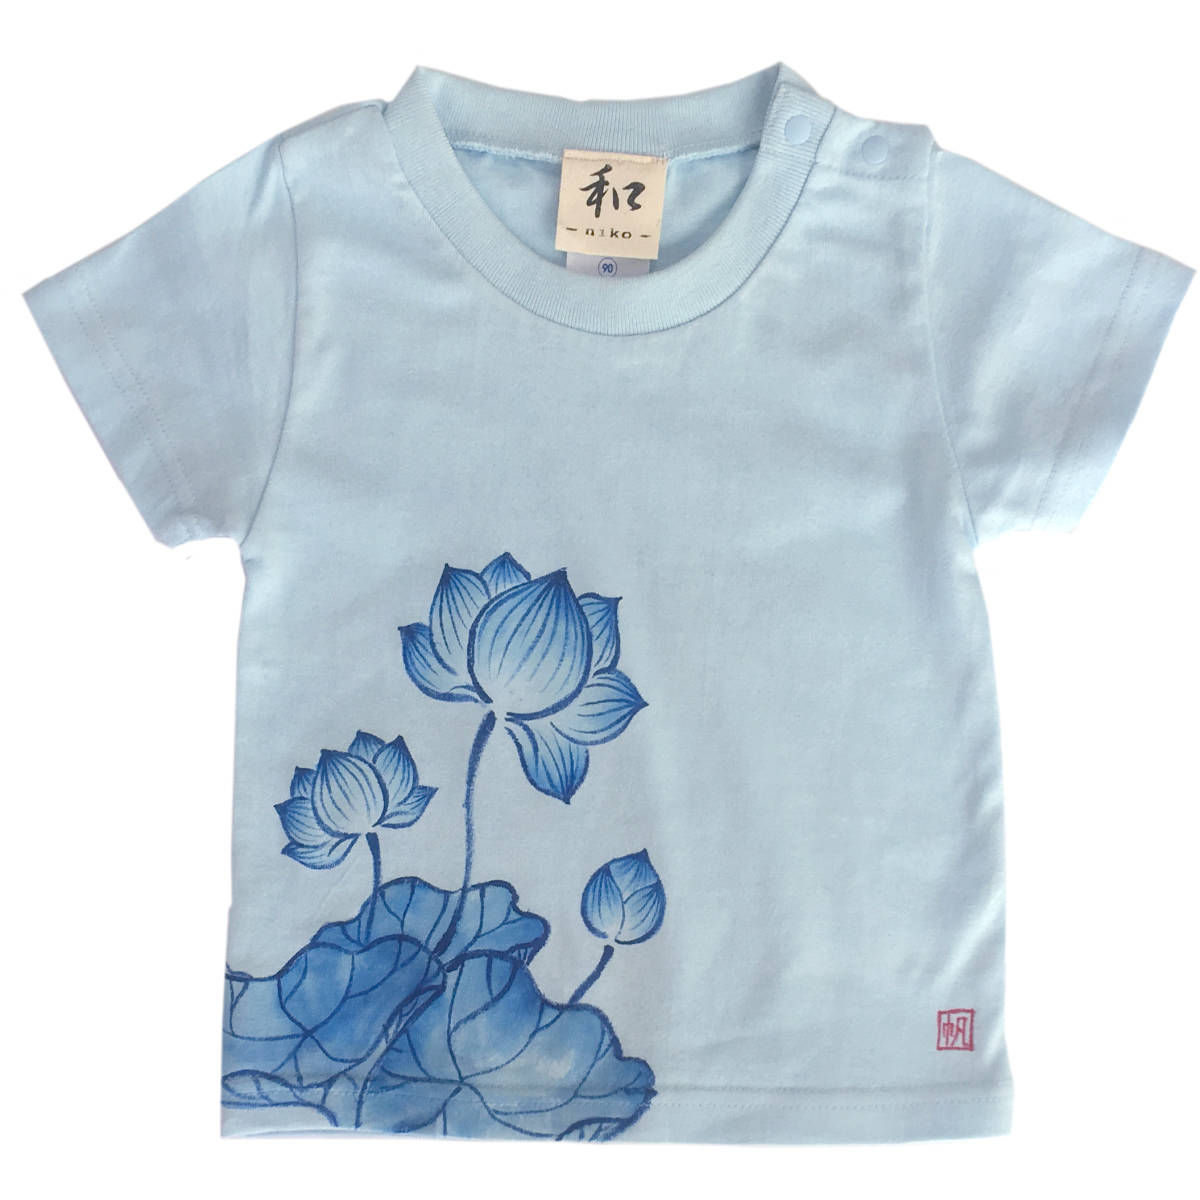 キッズ Tシャツ 120サイズ ブルー 蓮柄Tシャツ 手描きで描いた蓮の花柄Tシャツ 半袖 和柄 和風 レトロ ハンドメイド, トップス, 半袖Tシャツ, 120(115~124cm)